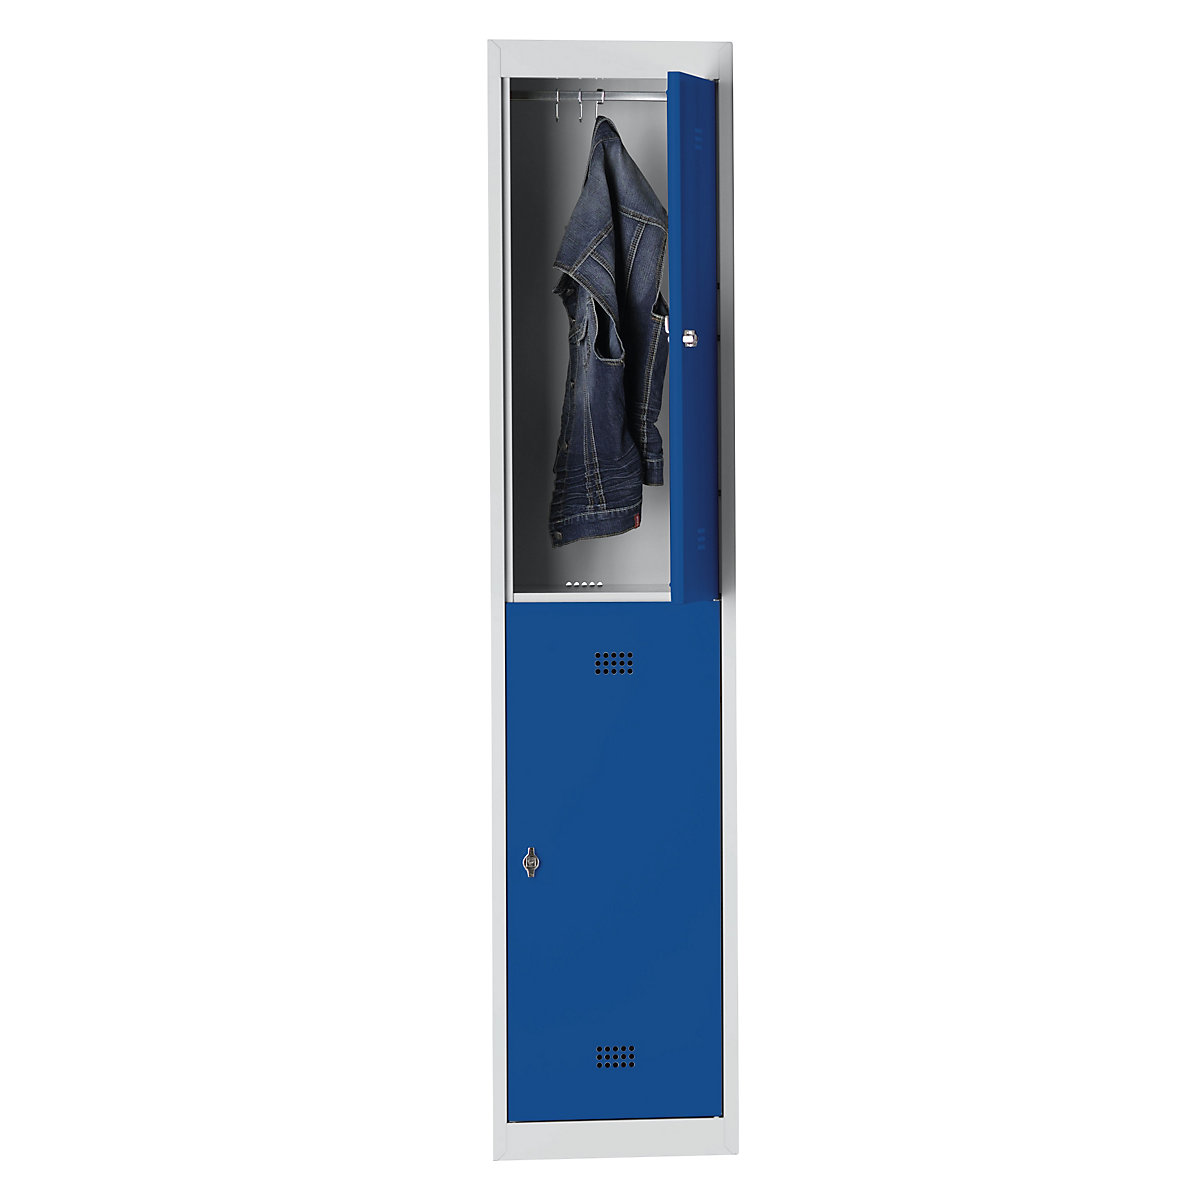 Ocelová skříňka – Wolf, s vypalovaným nátěrem, 2 oddíly, výška 840 mm, šířka 400 mm, 1 tyč na oděvy, přístavný prvek, světlá šedá / enciánová modrá